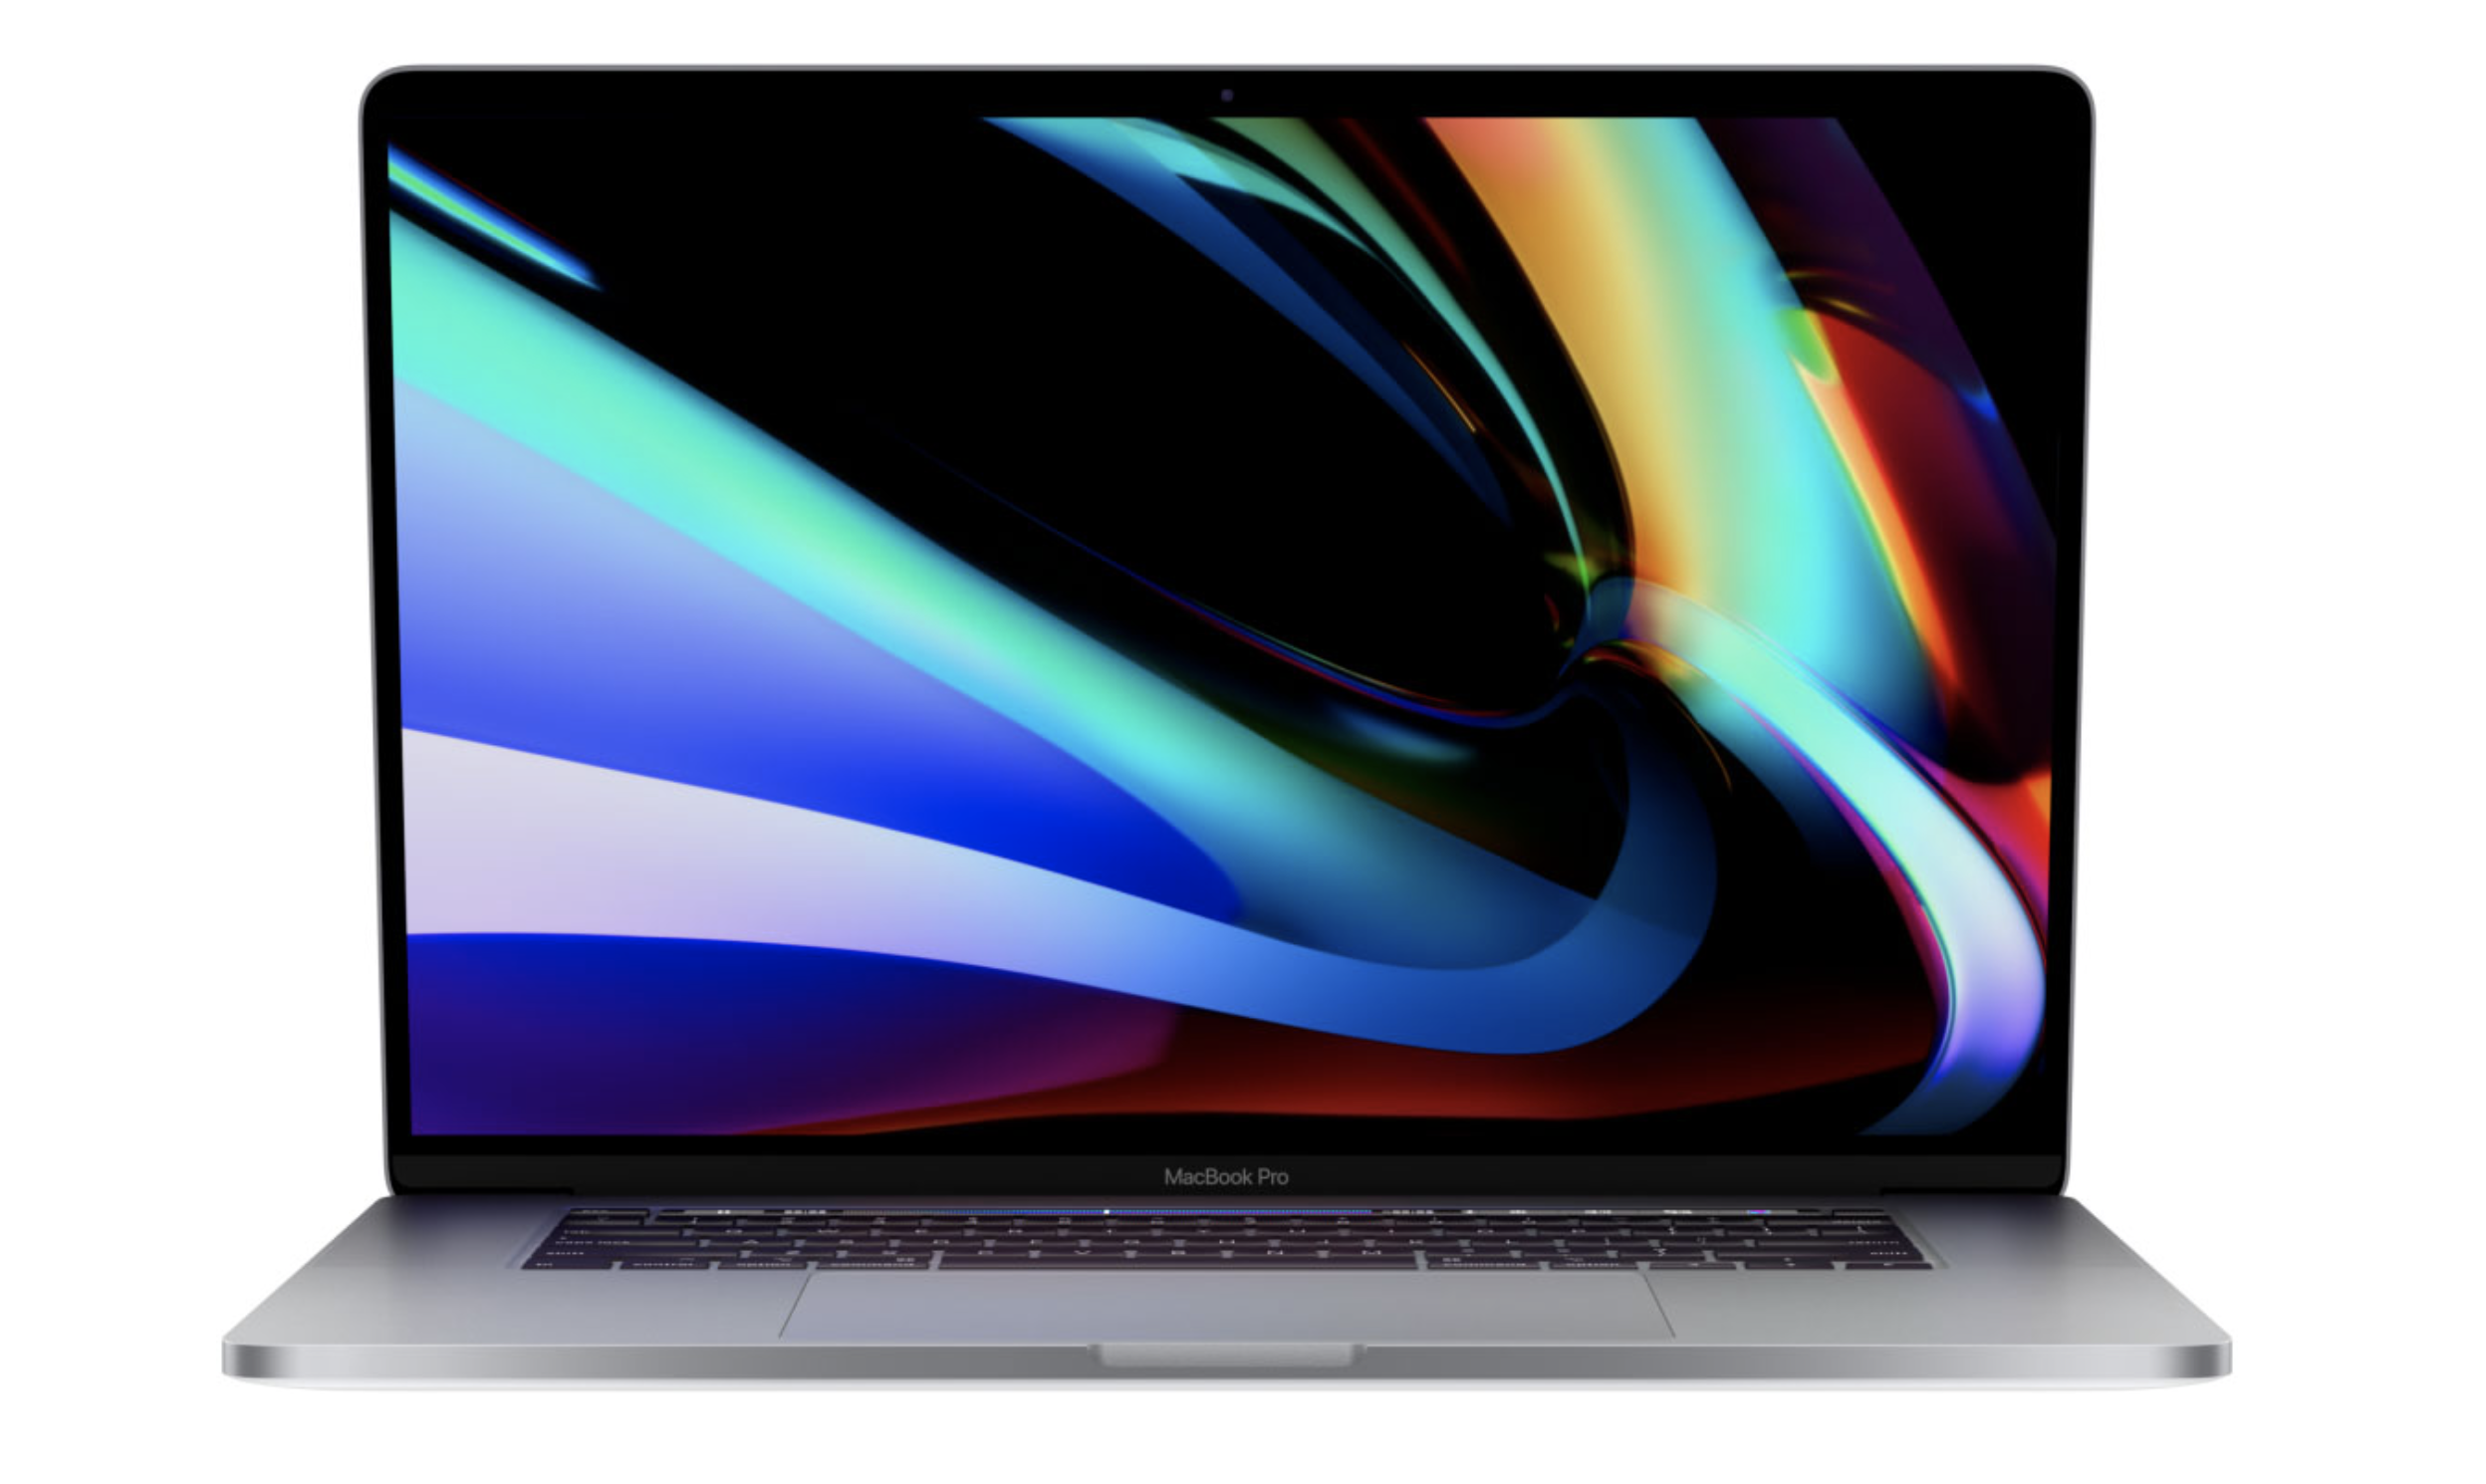 苹果macos系统,全新safari浏览器,很难适应颜色的变化